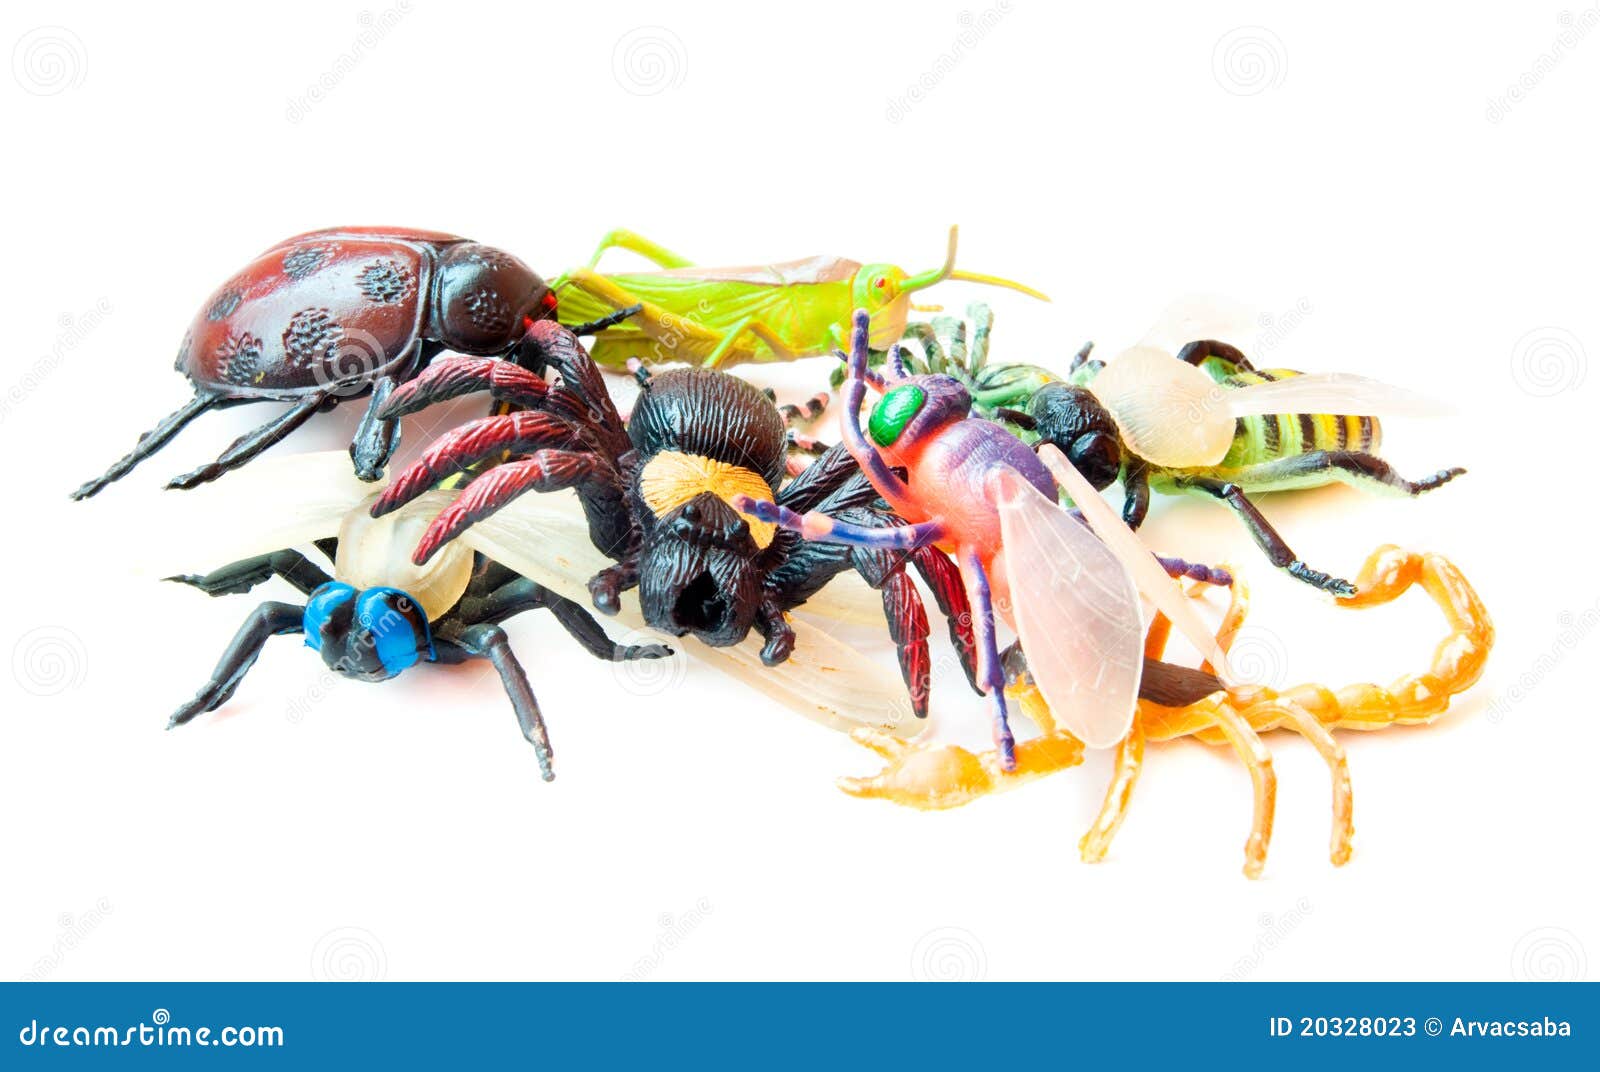 Porción De Los Insectos Del Juguete Imagen de archivo - Imagen de